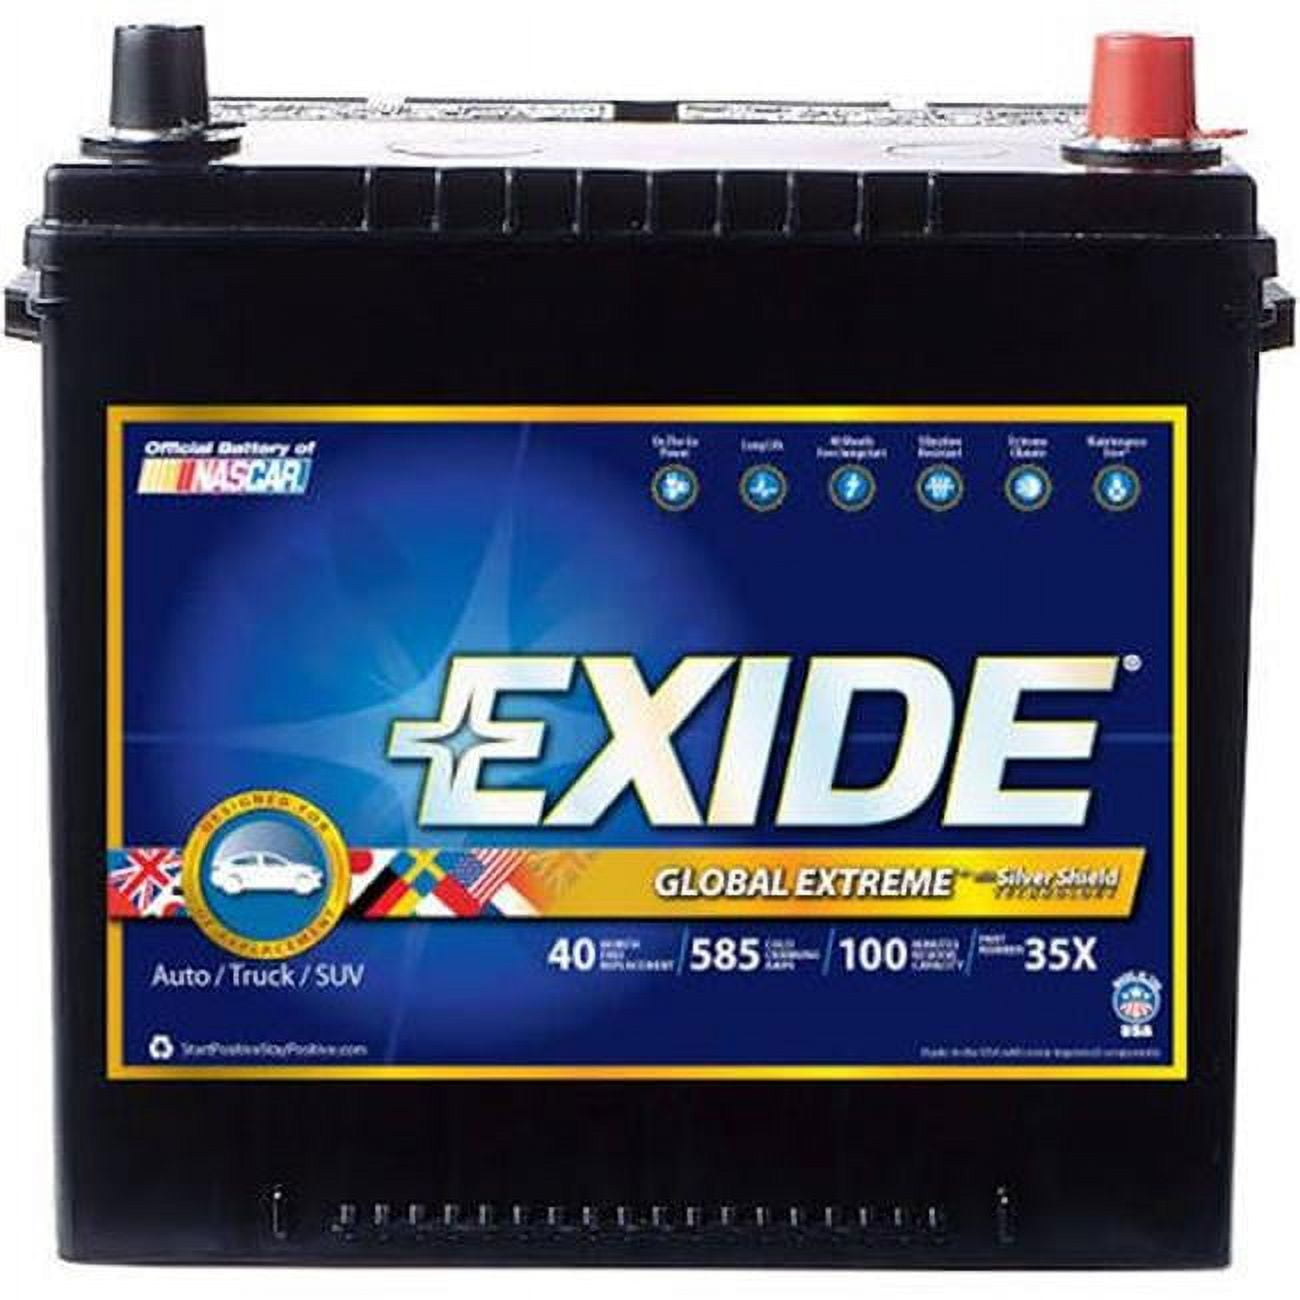 New Evolution Range Exide (067TE) Low Cost Batteries Online